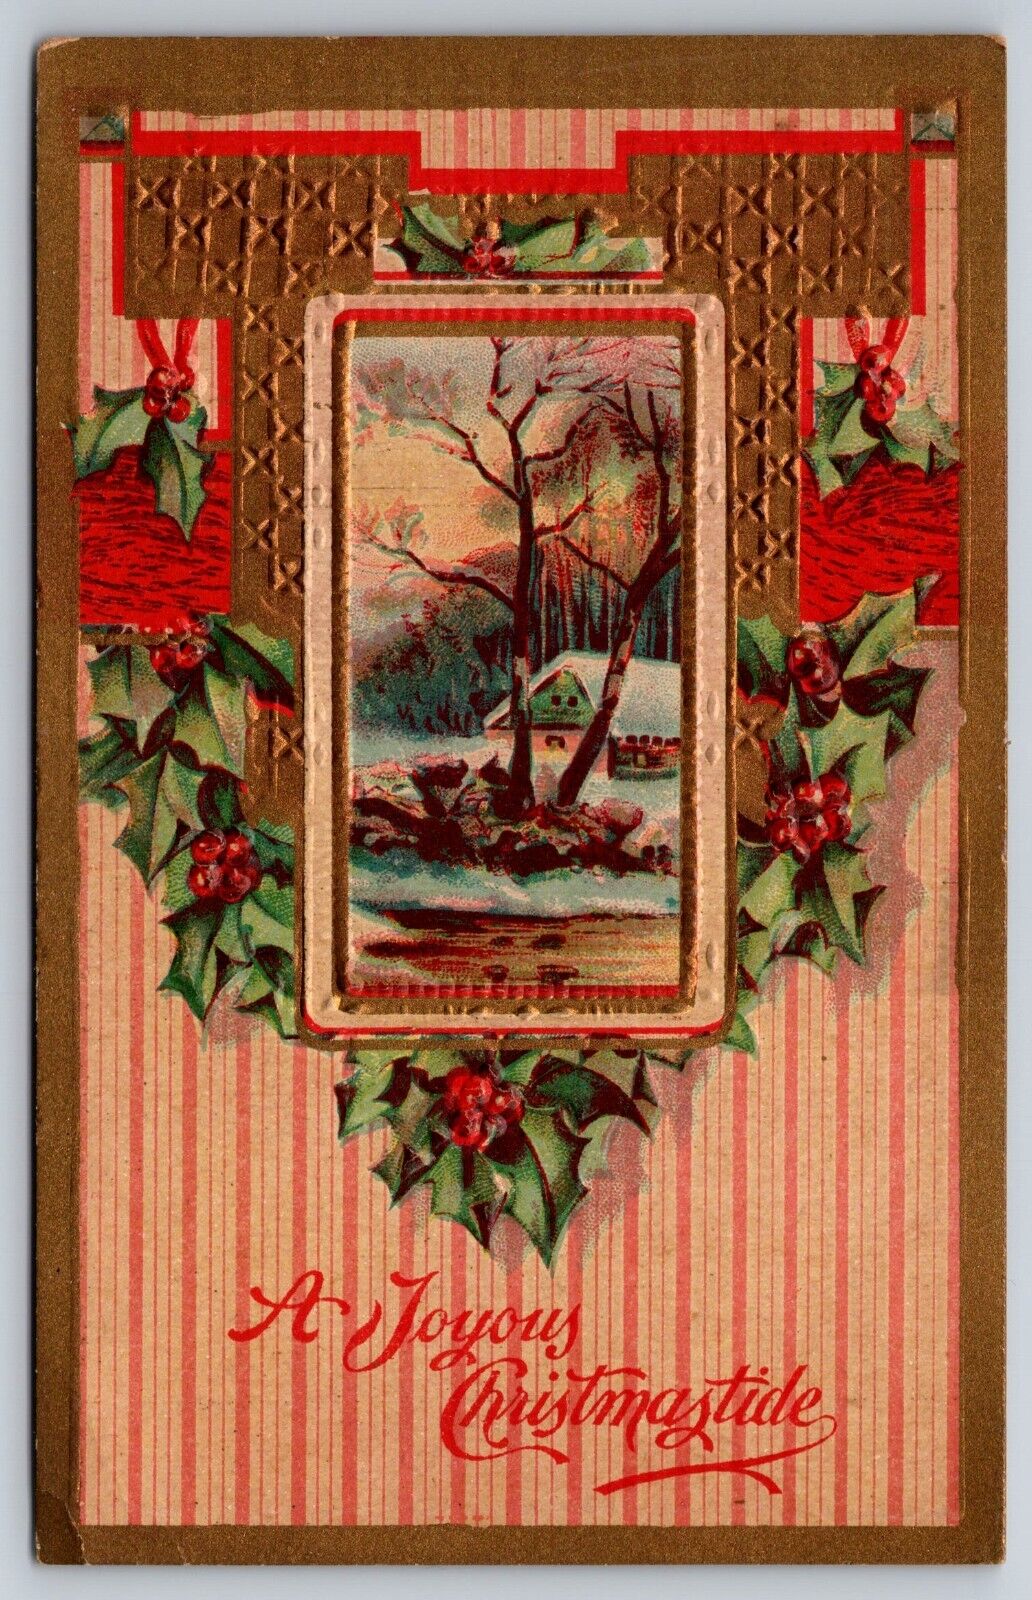 Postcard - A Joyous Christmastide card